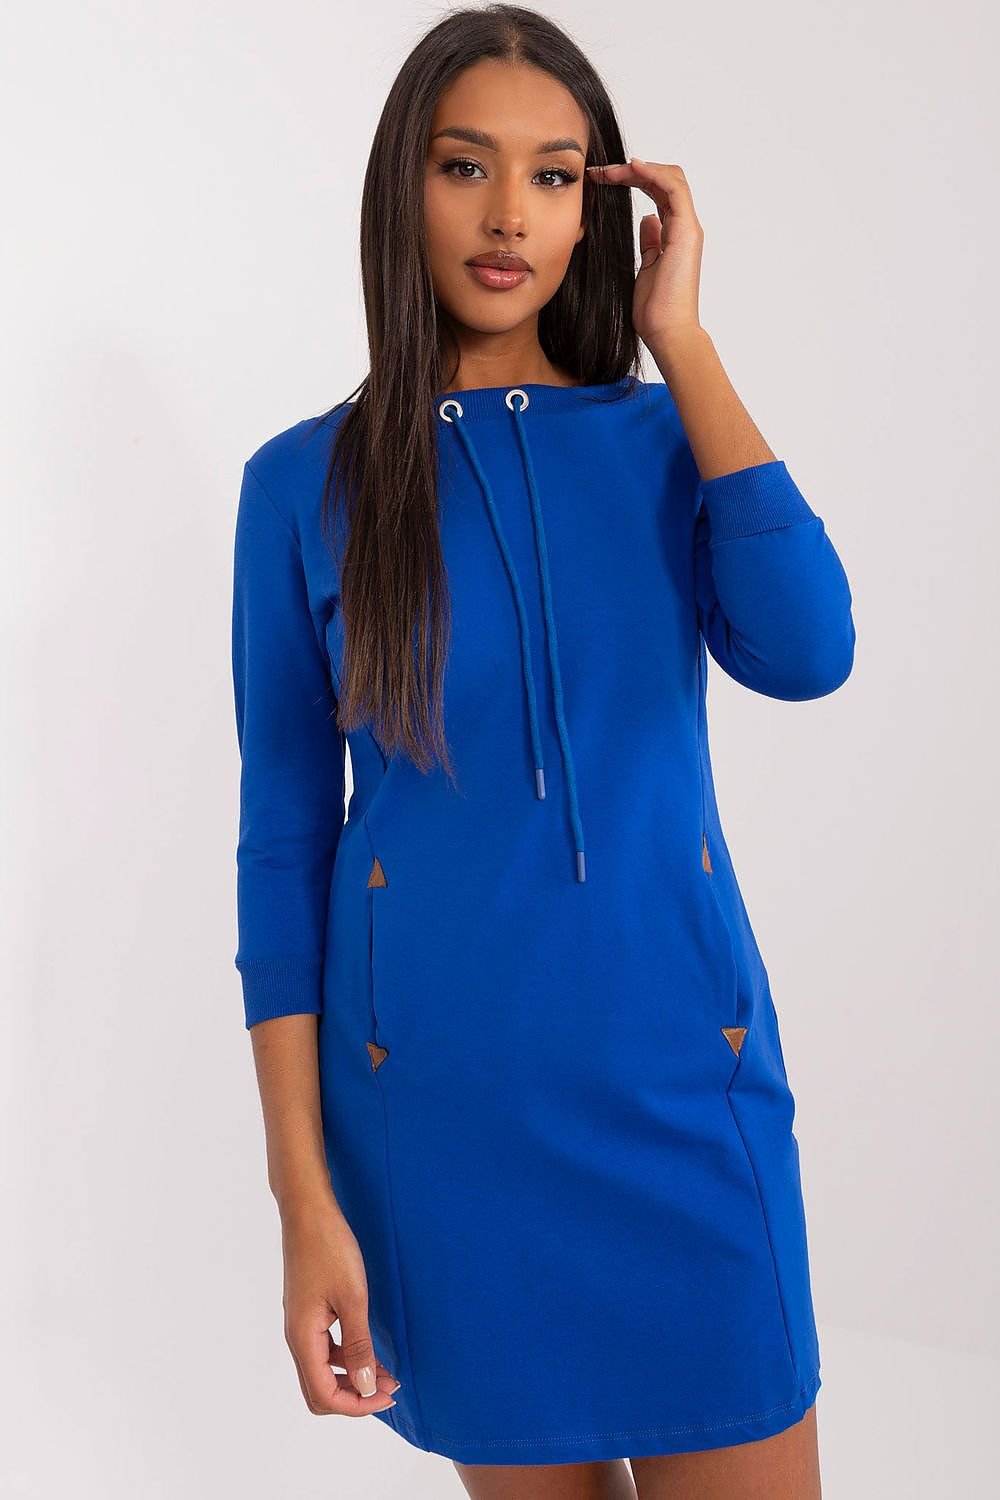 TEEK - Drawstring Pocketed Sweatshirt Daydress DRESS TEEK MH blue L/XL 